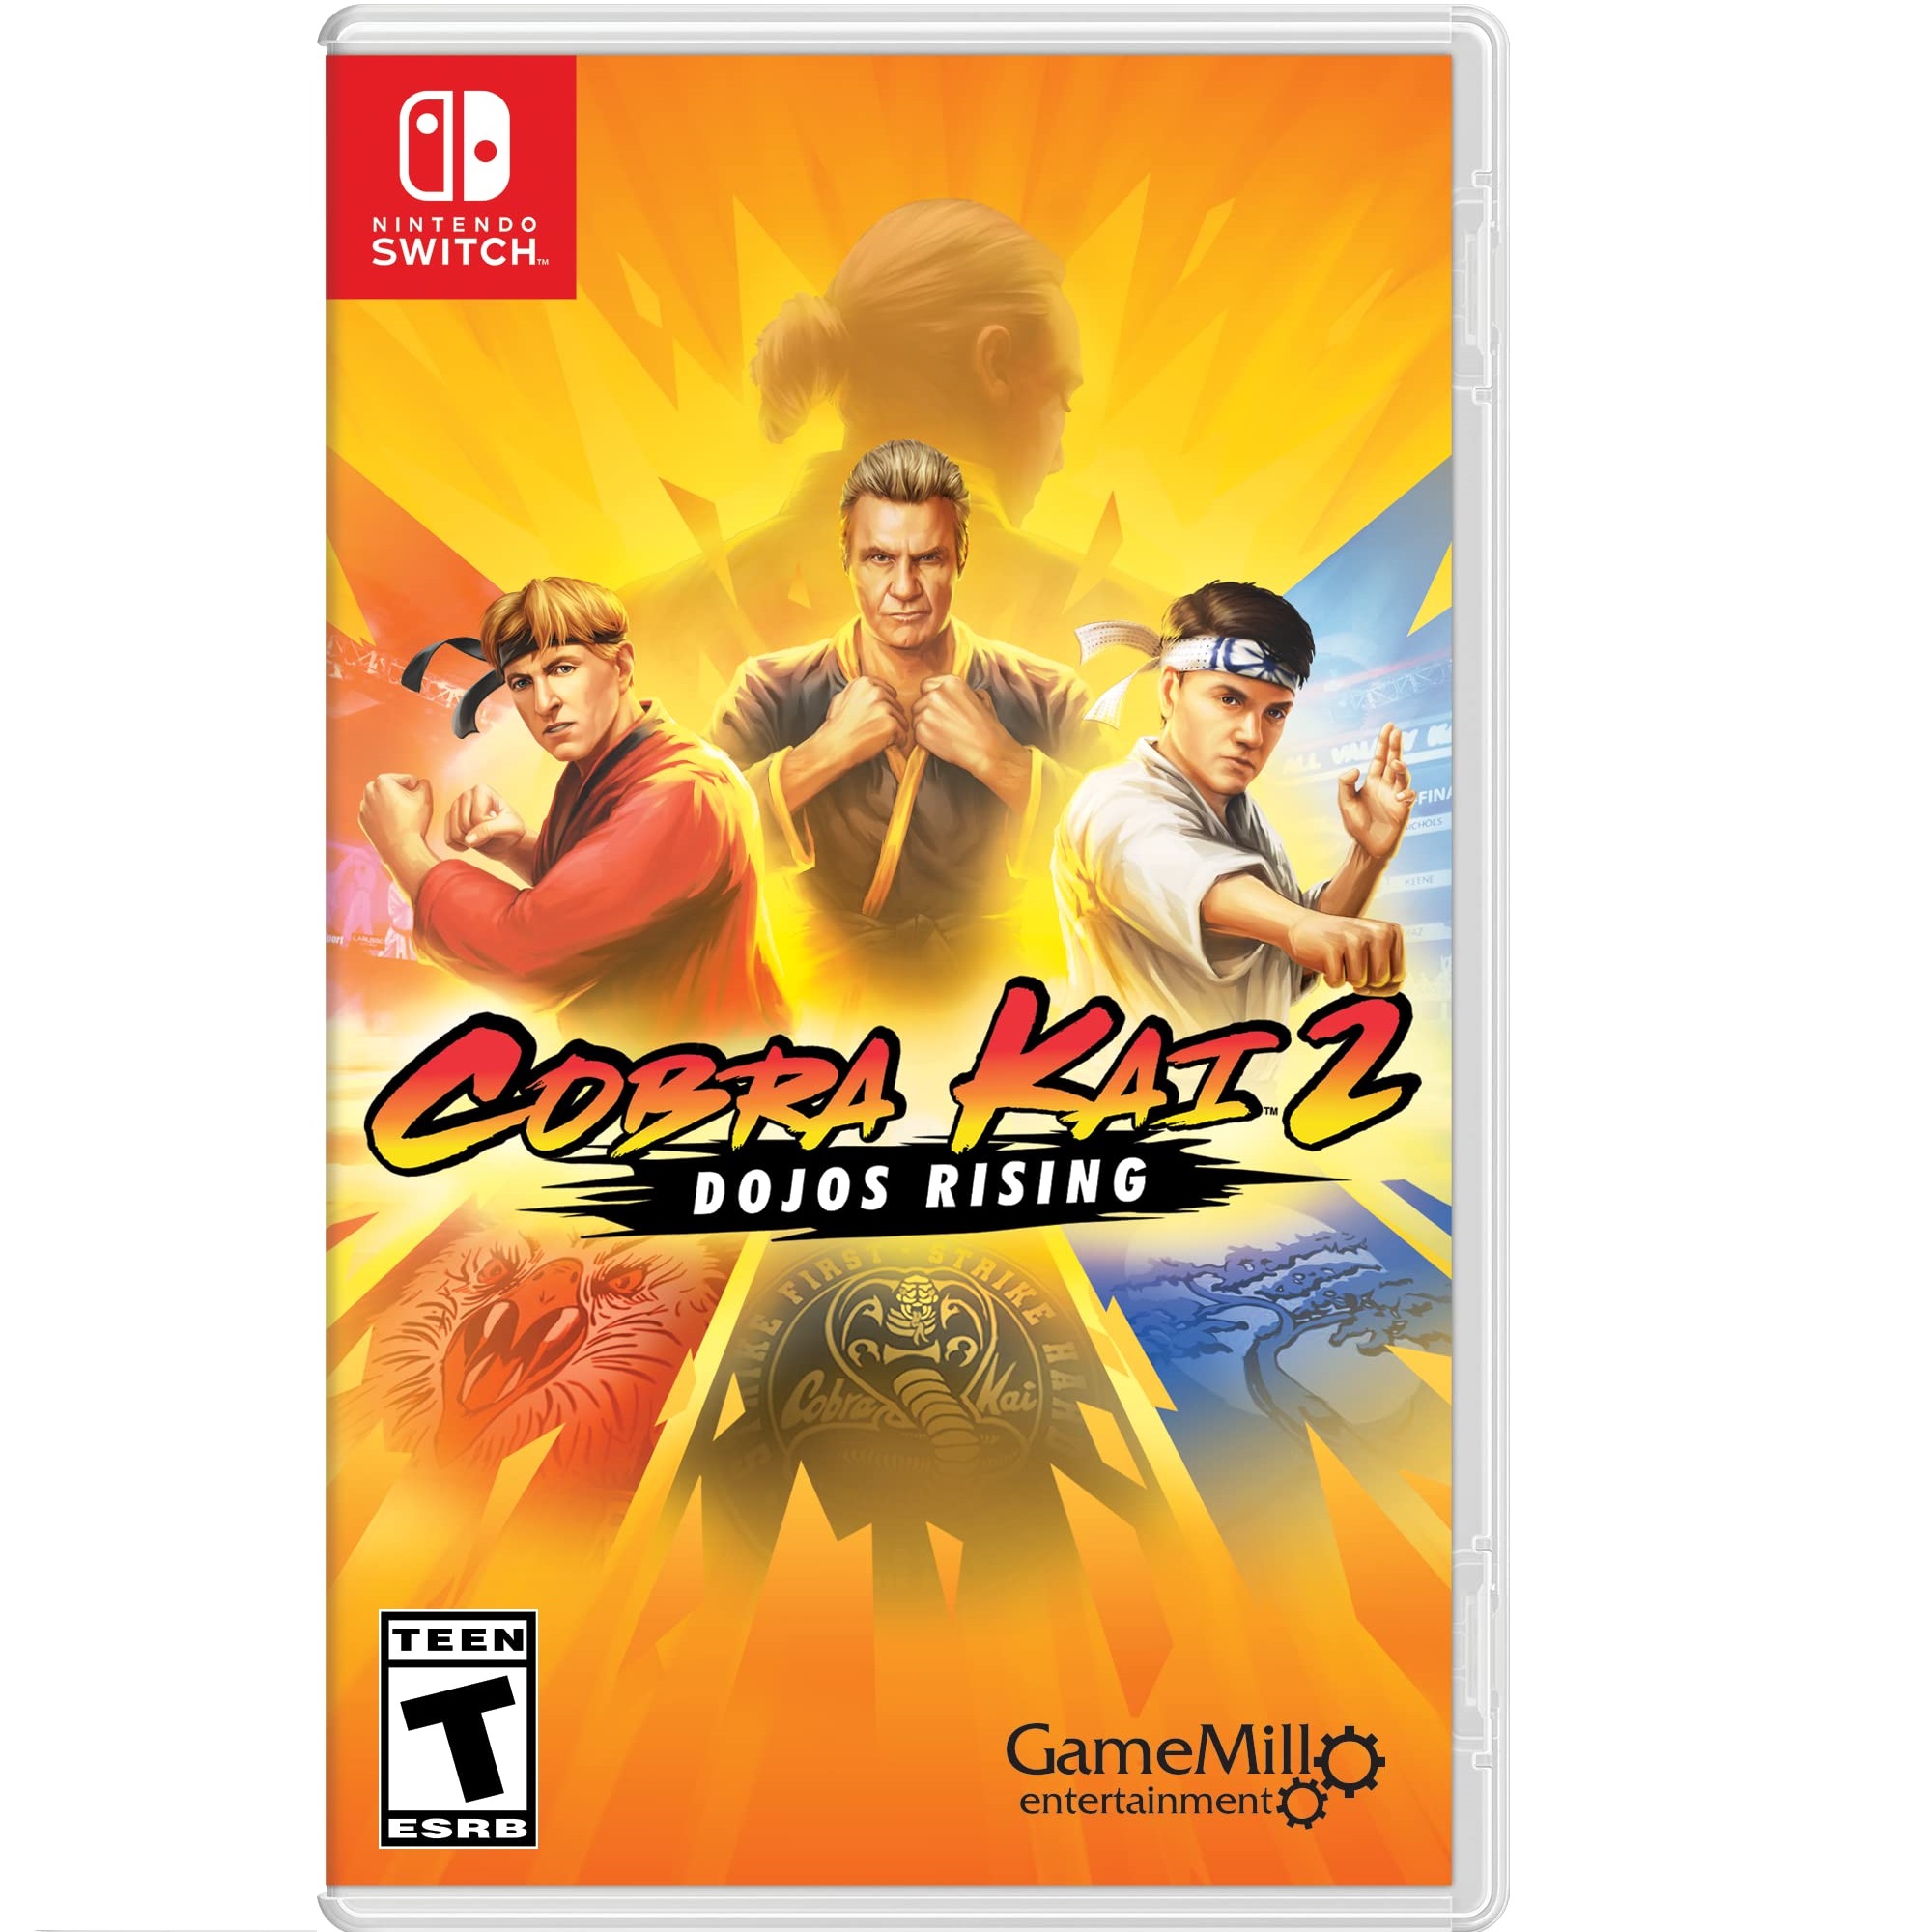 Игра Cobra Kai 2: Dojos Rising для Nintendo Switch